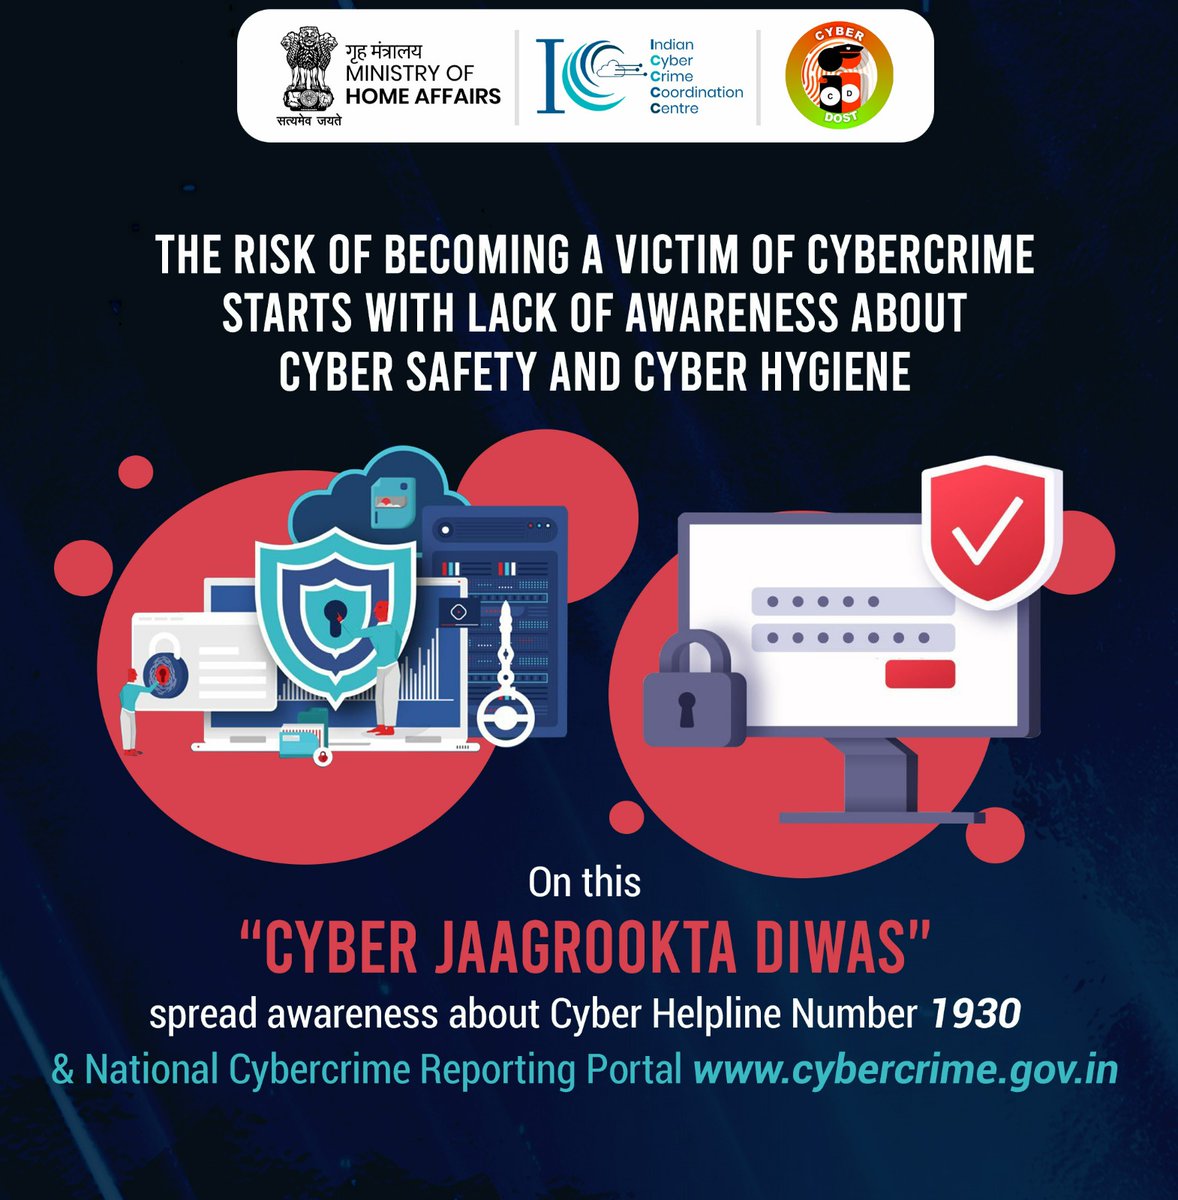 1st Wednesday of the month, i.e. #CyberJaagrooktaDiwas. Spread awareness on #CyberHygiene & comment with your thumb rule for #CyberSafety
पहला बुधवार यानि साइबर जागरुकता दिवस, आइए साइबर स्वच्छता और साइबर सुरक्षा प्रसार करें एवं इस पर अपने विचार कमैंट्स में लिखें।
#Dial1930 #G20